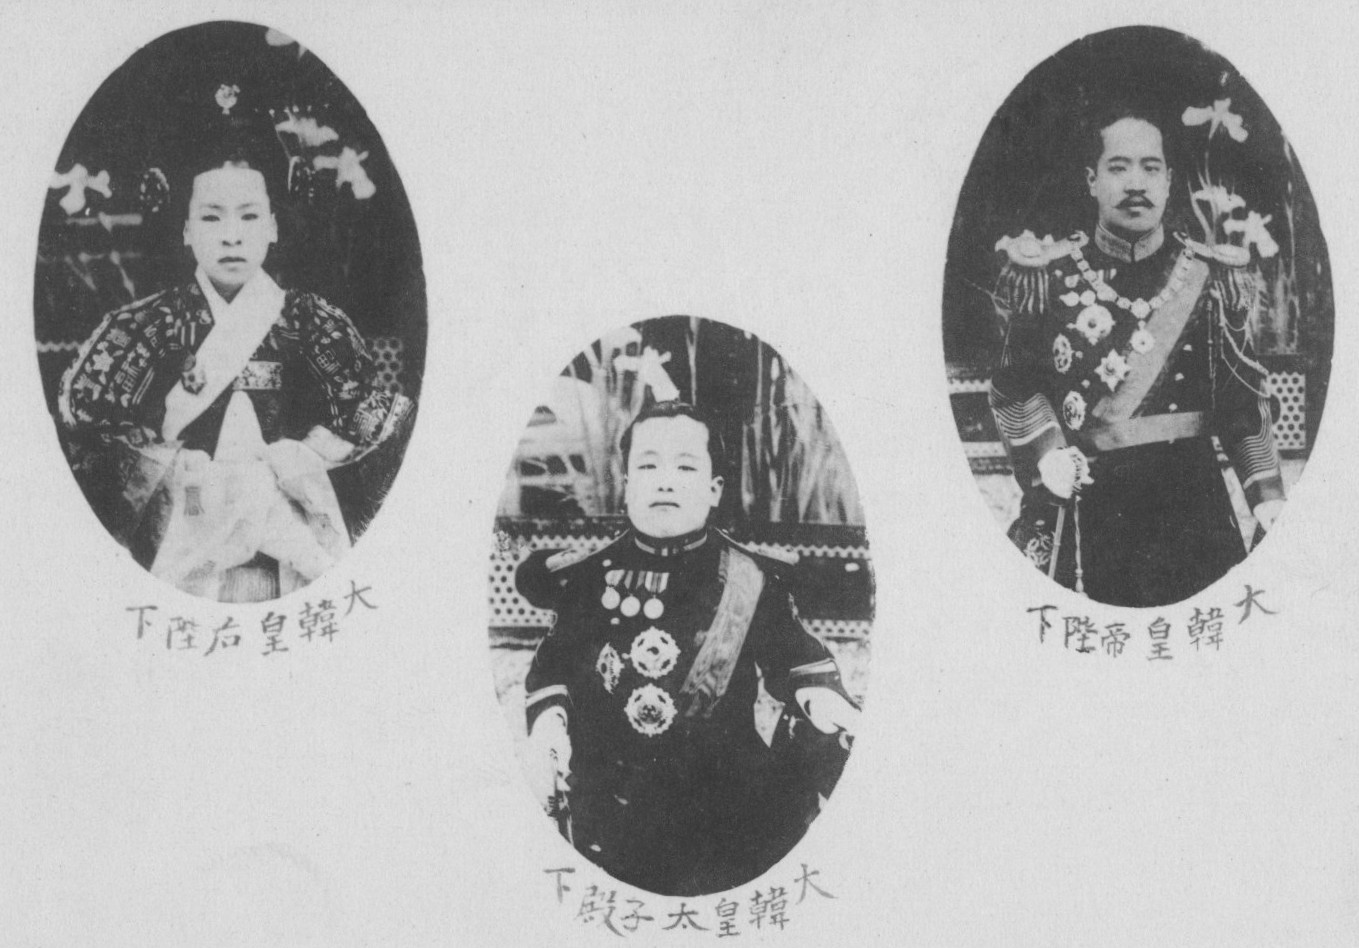 Portraits of Emperor Sunjong of Korea (right), Prince Imperial Yeong Yi Un (center), and Empress Sunjeong (left), circa 1904